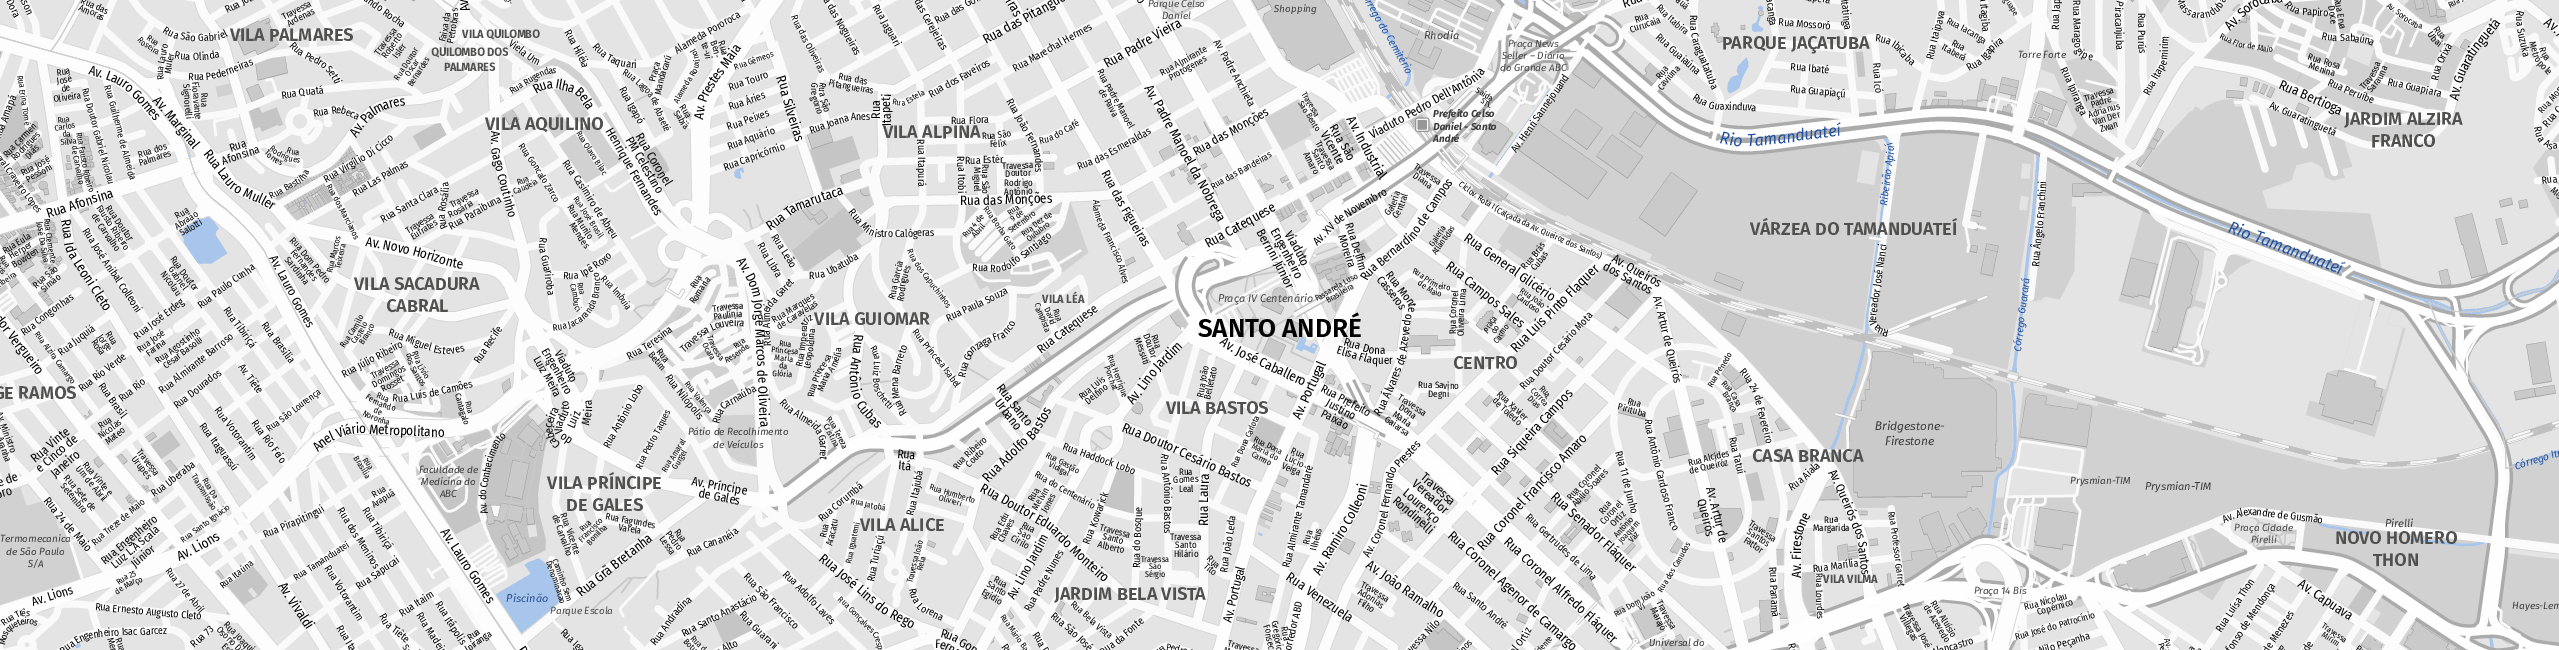 Stadtplan Santo André zum Downloaden.